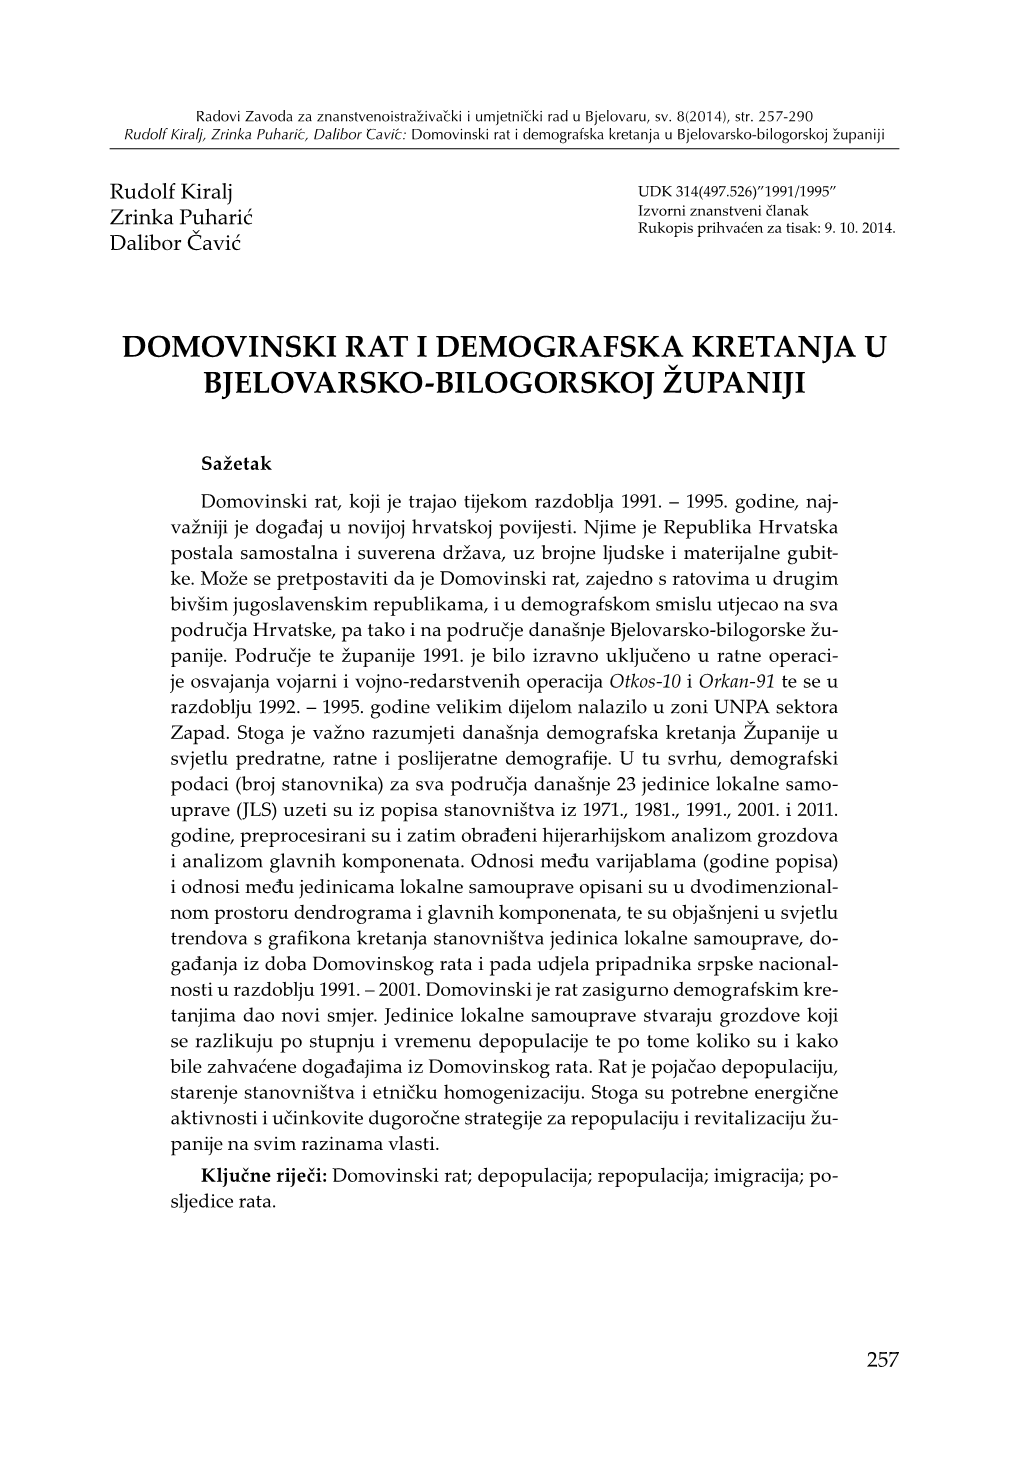 Domovinski Rat I Demografska Kretanja U Bjelovarsko-Bilogorskoj Županiji